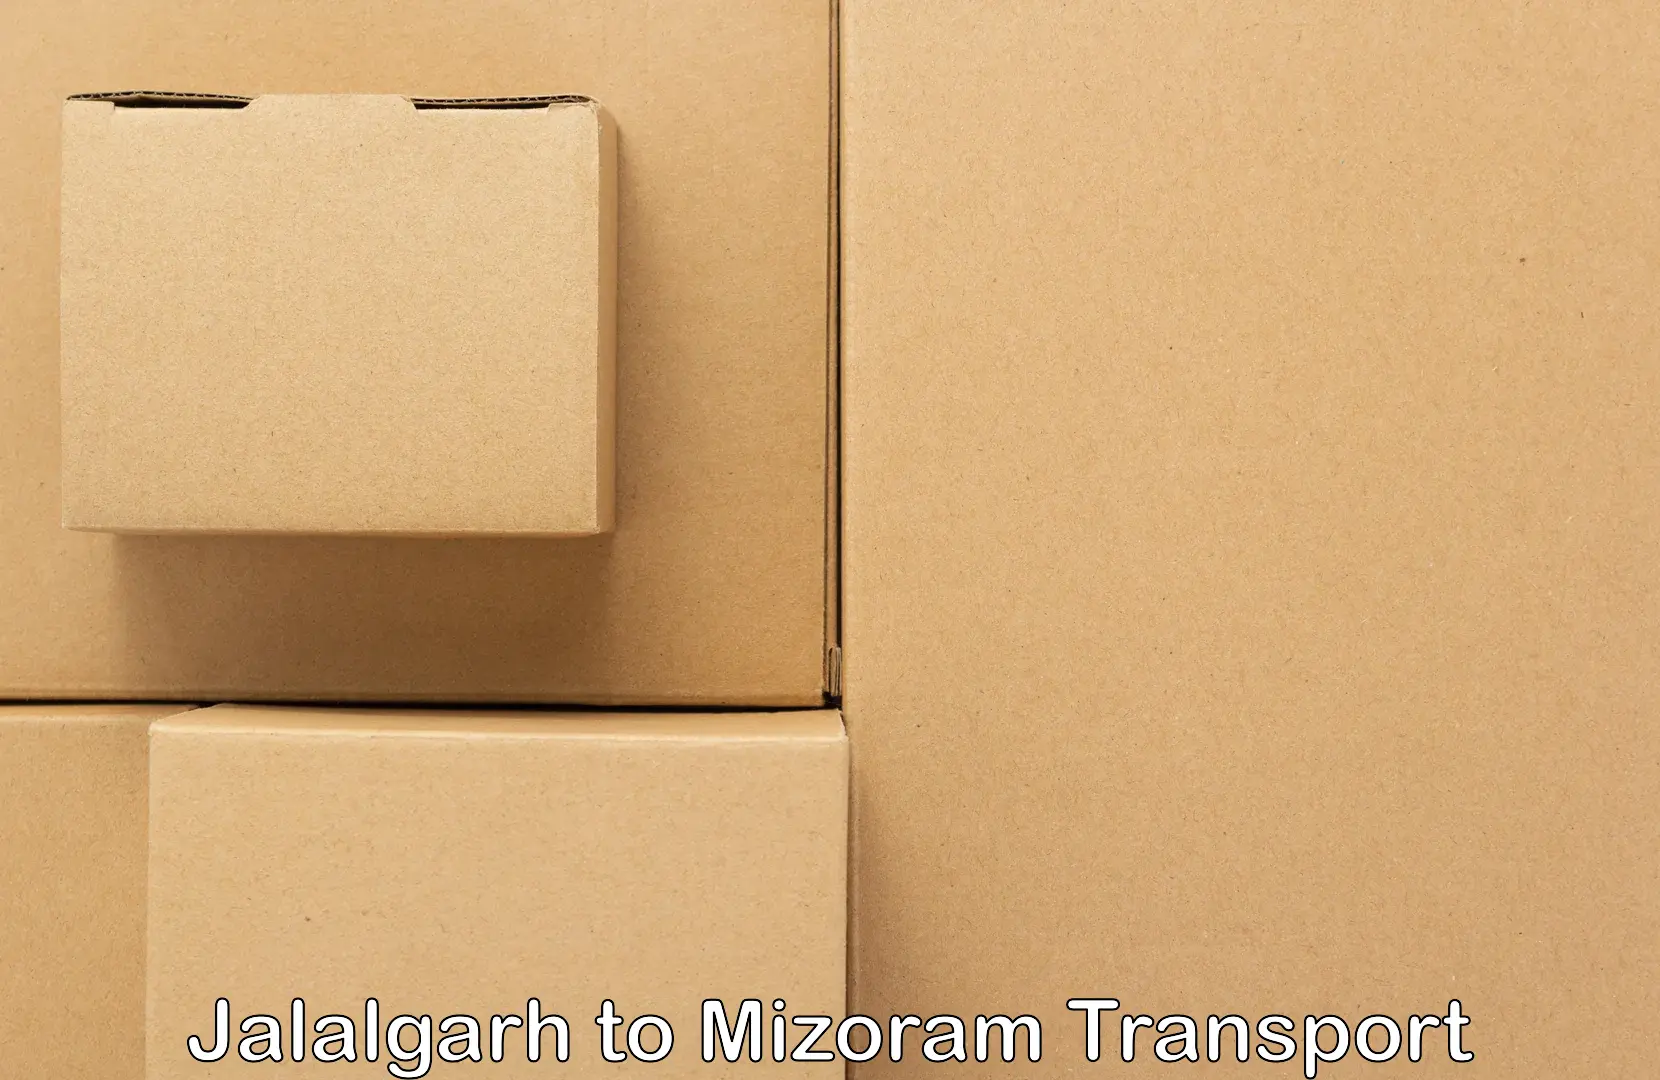 Lorry transport service Jalalgarh to Mizoram